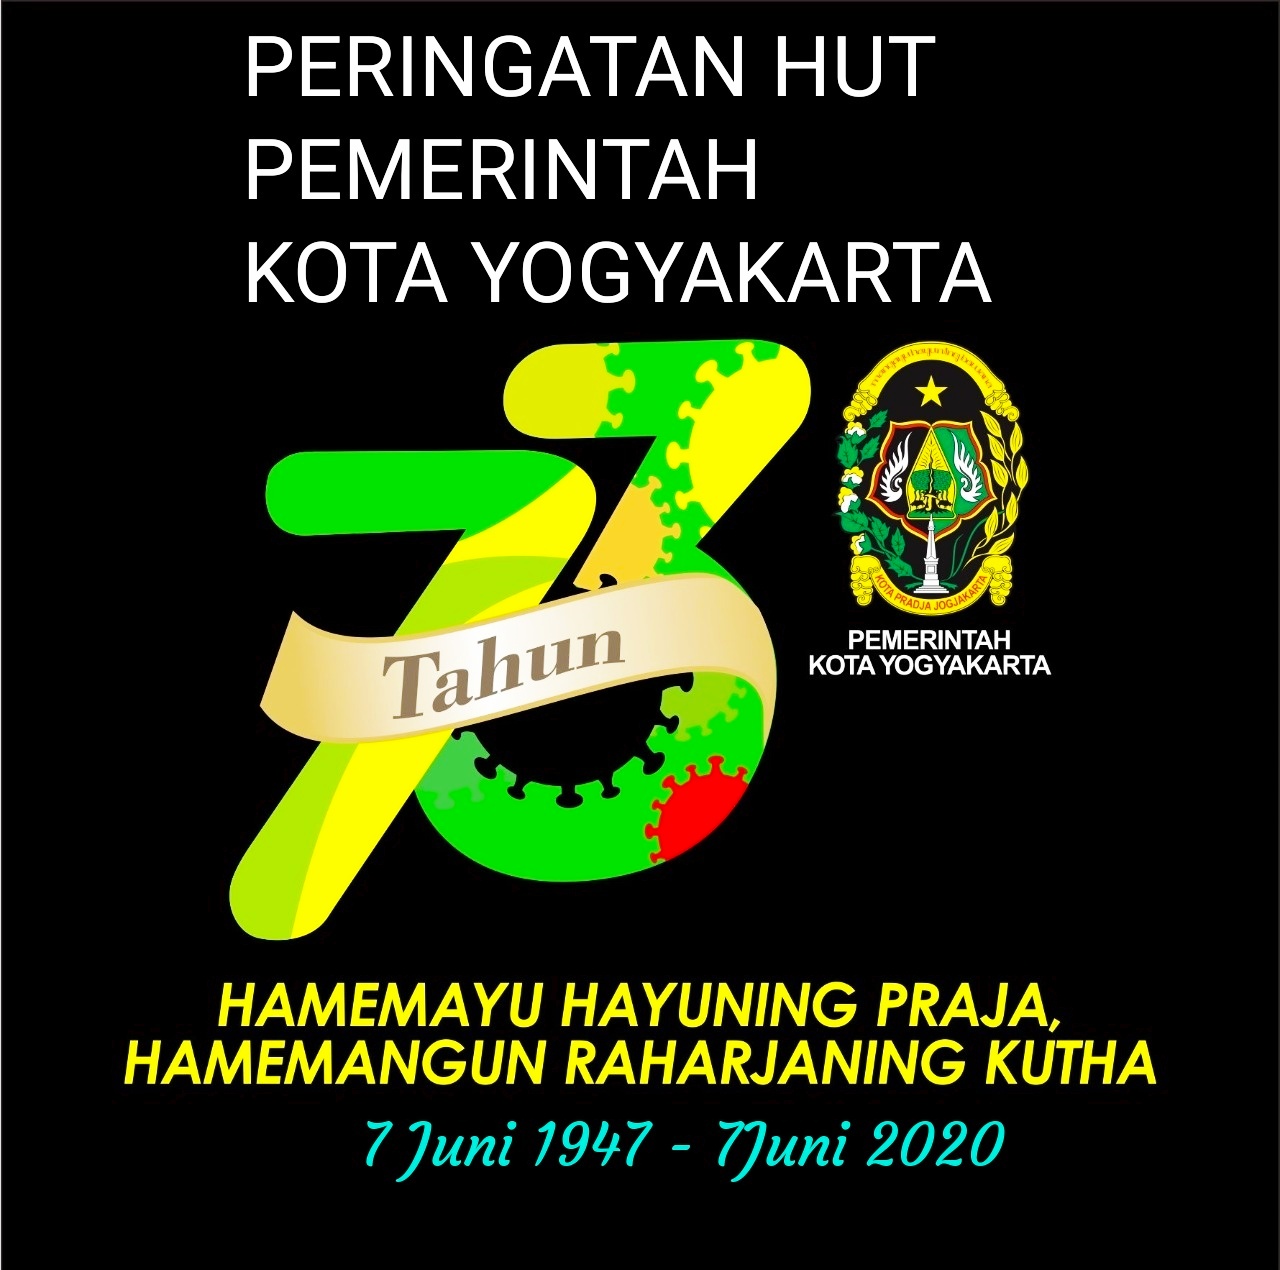 Peringatan HUT Pemerintah Kota Yogyakarta